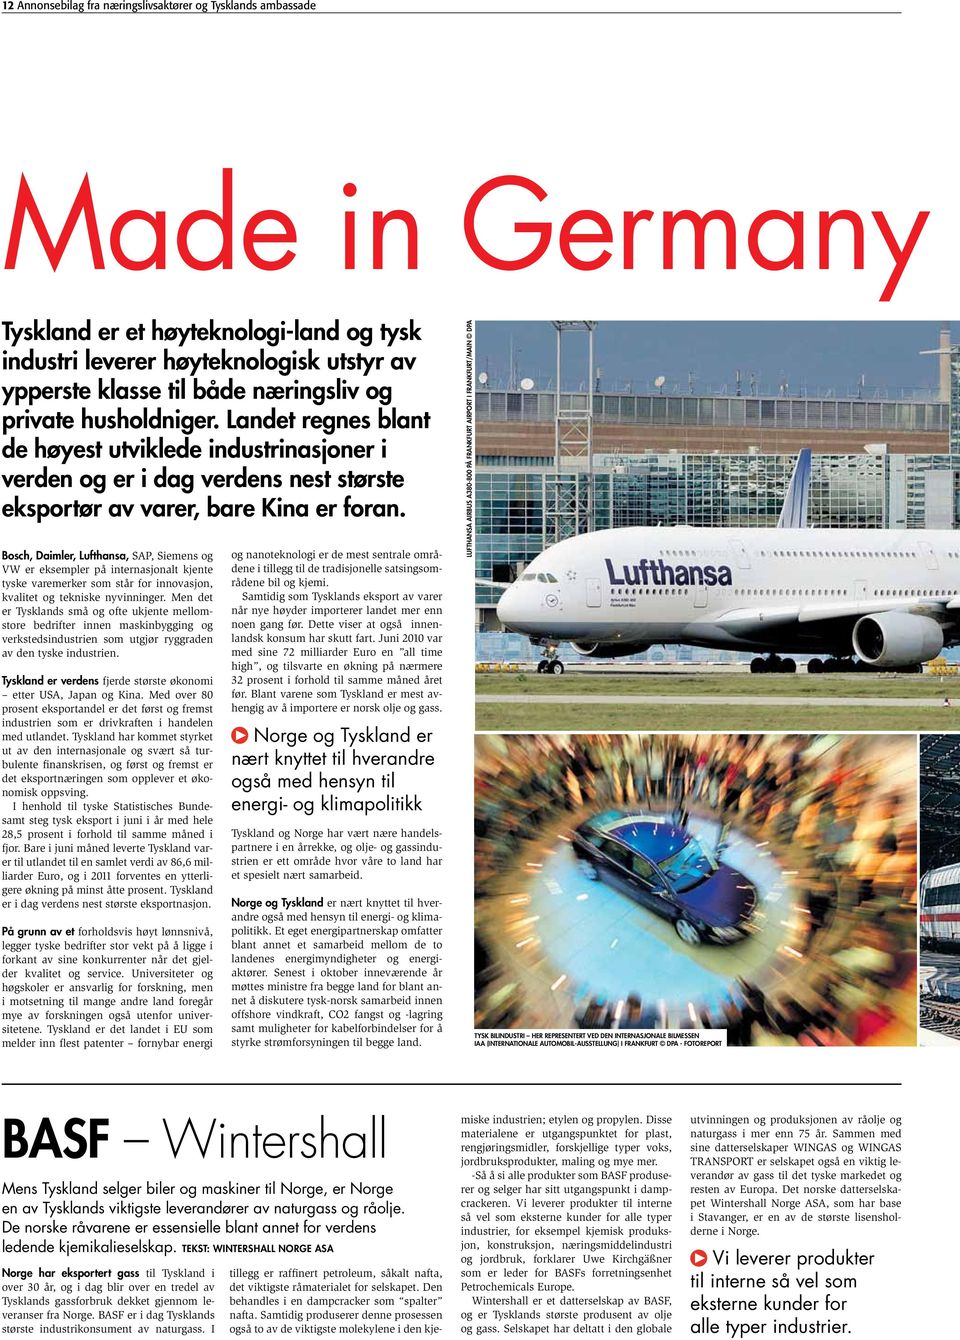 Bosch, Daimler, Lufthansa, SAP, Siemens og VW er eksempler på internasjonalt kjente tyske varemerker som står for innovasjon, kvalitet og tekniske nyvinninger.